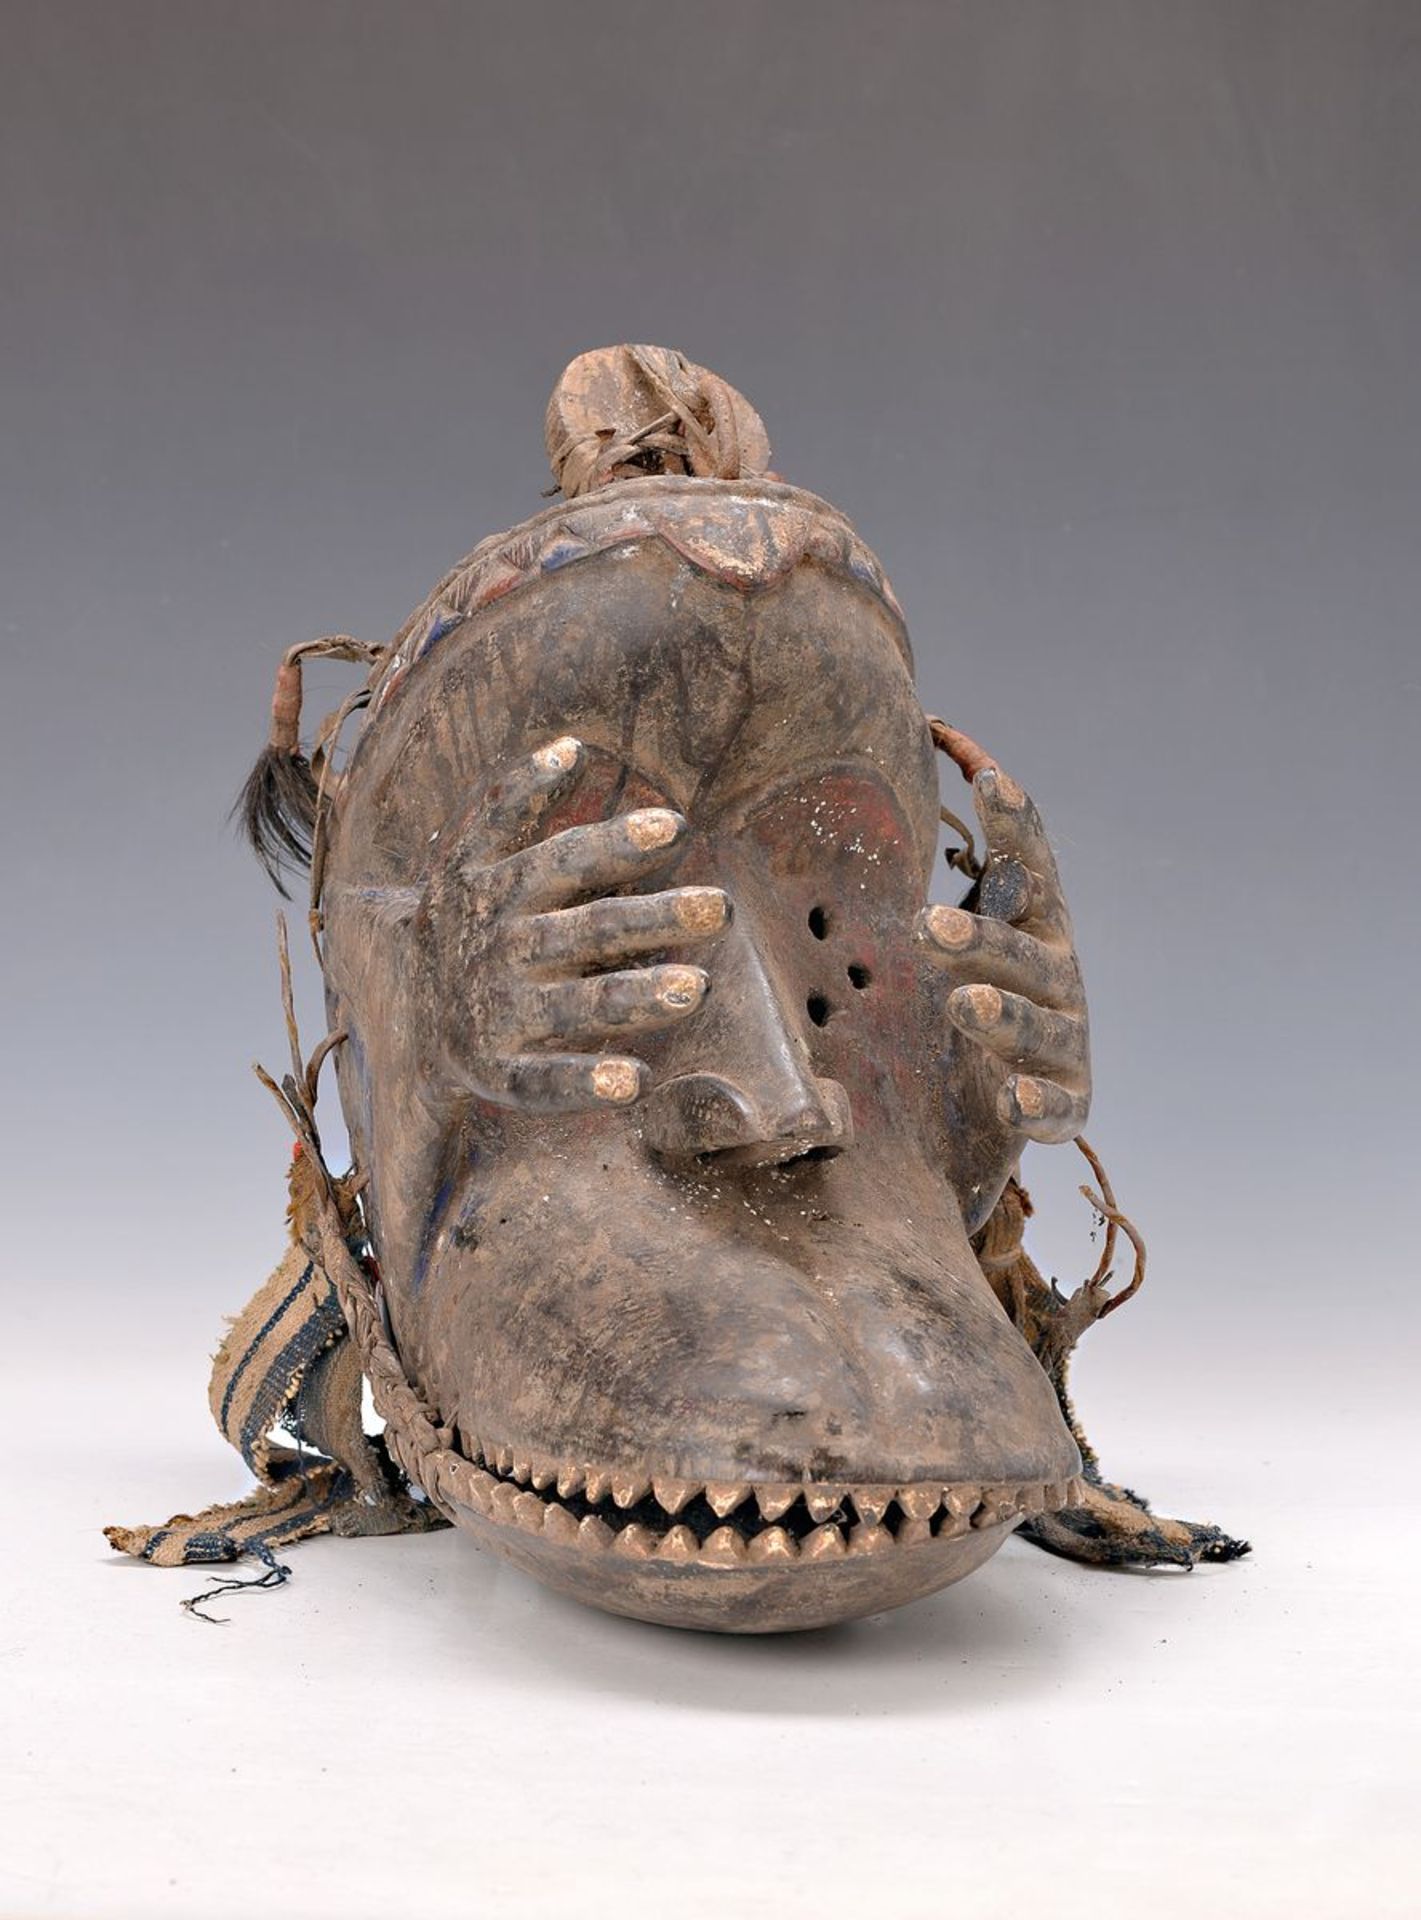 Maske der Kran, Elfenbeinküste, ca. 50-60 Jahre alt, Holz geschnitzt, beweglicher Unterkiefer,